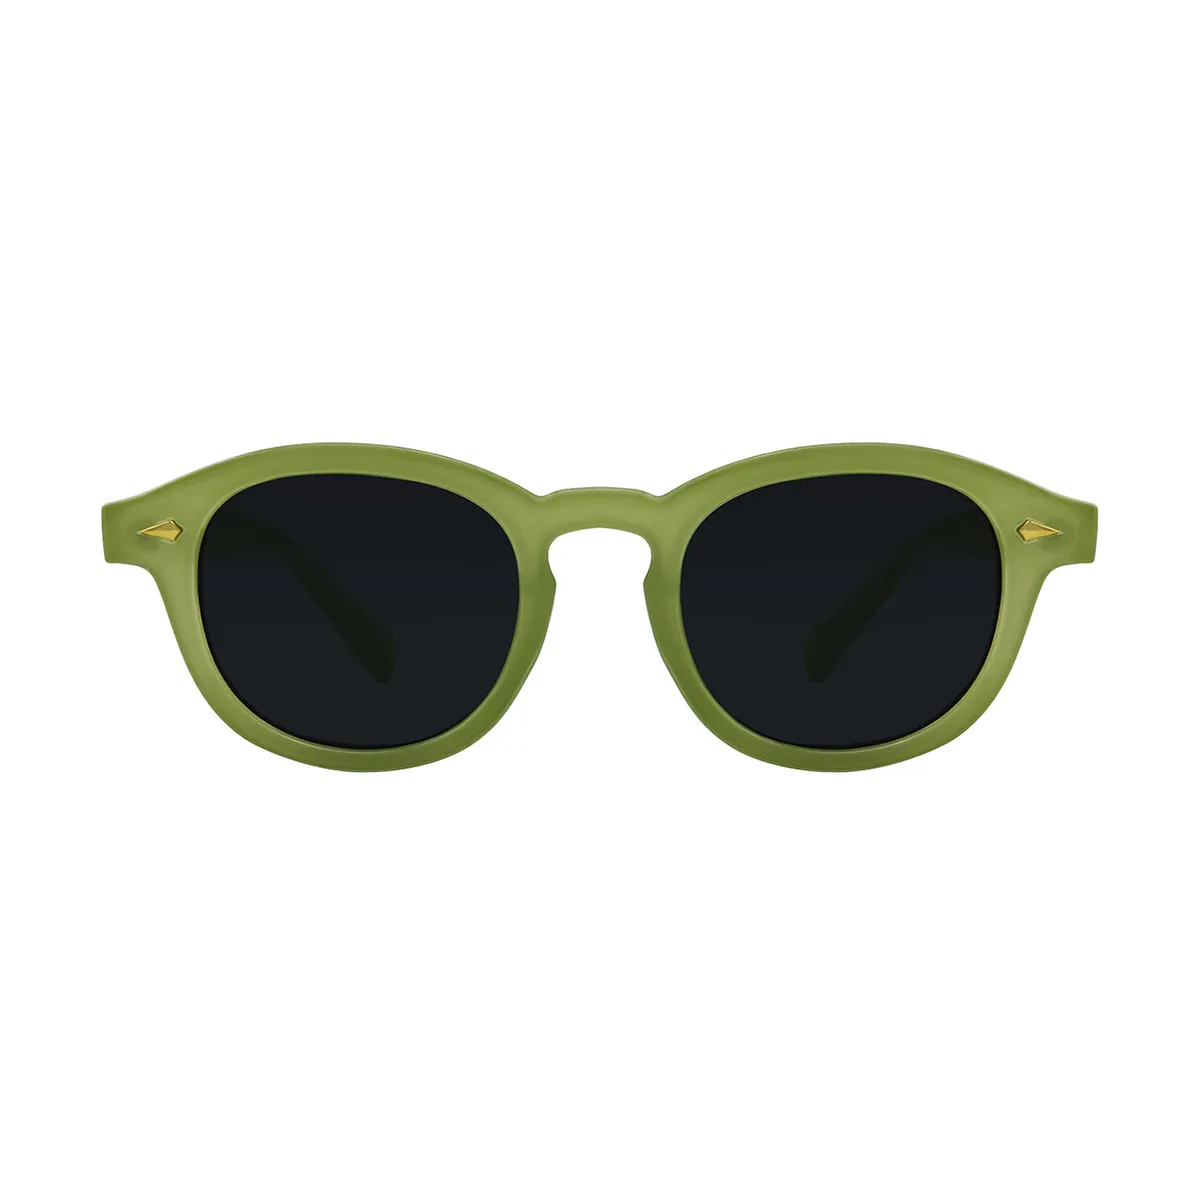 Neutral - glasses Green Sunglasses for Women